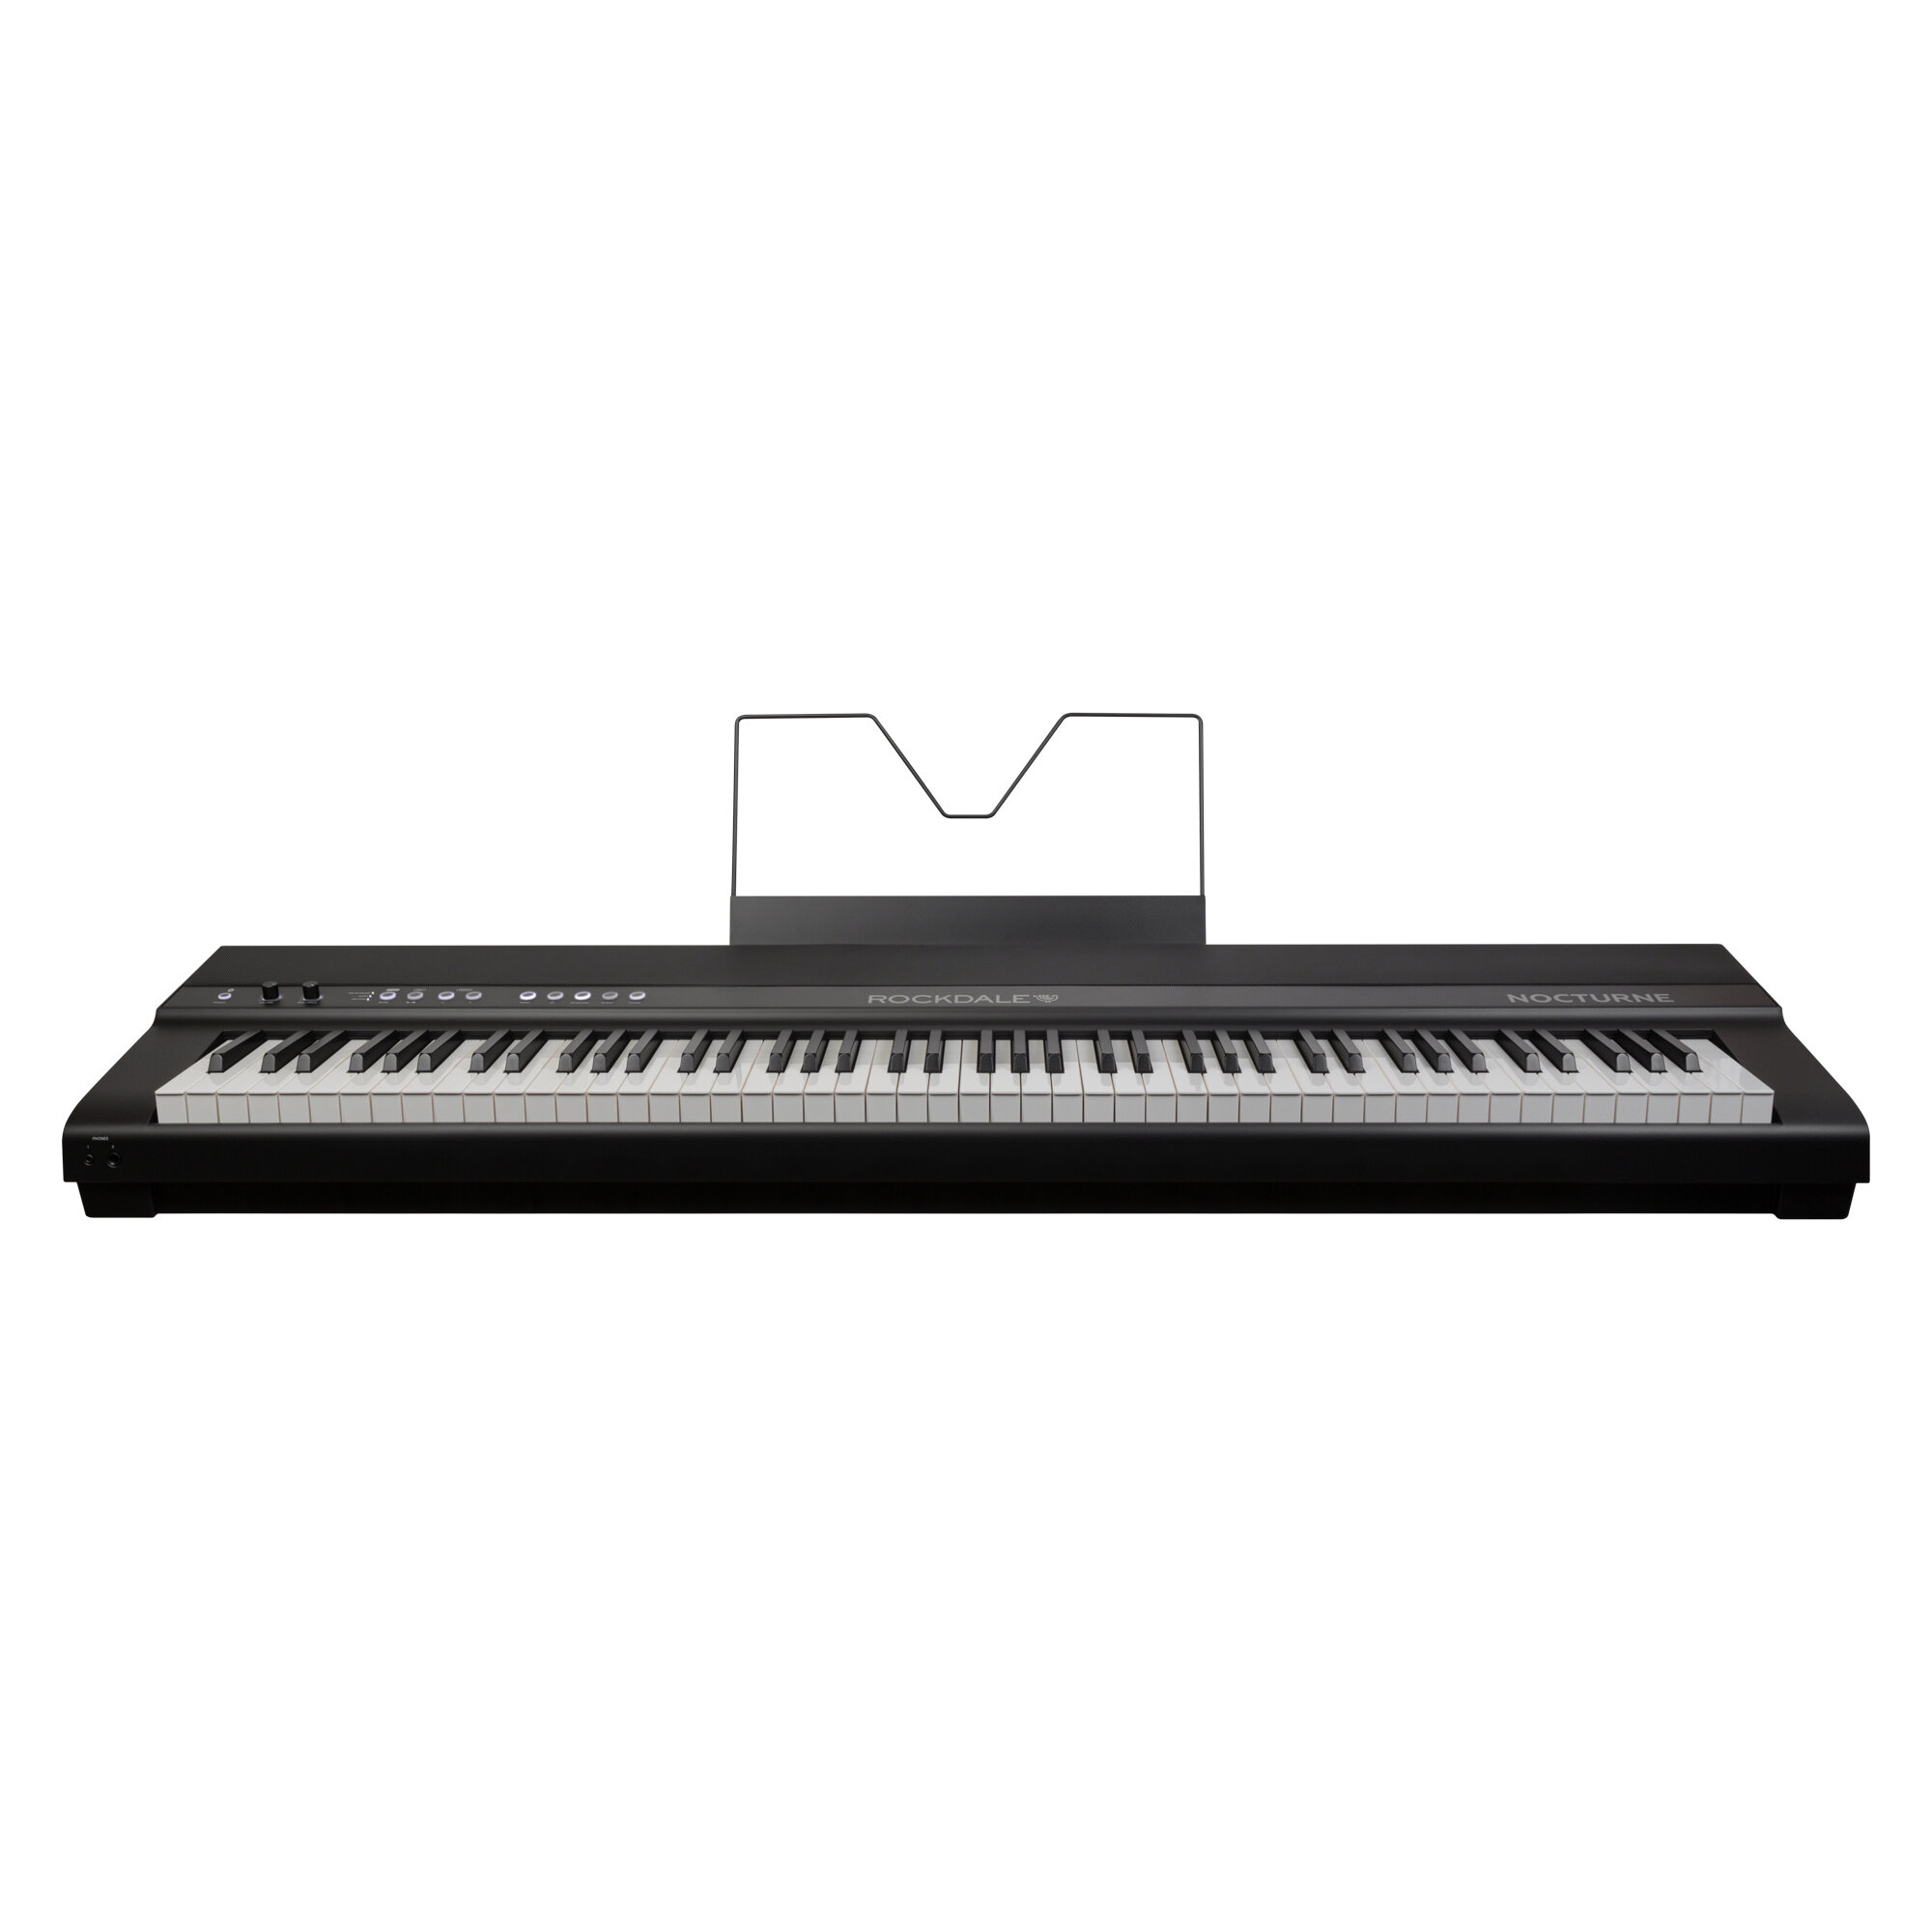 Rockdale Nocturne - Компактное цифровое фортепиано, 88 клавиш, градуированная клавиатура, 192 голоса полифония, 25 тембров, 50 барабанных паттернов